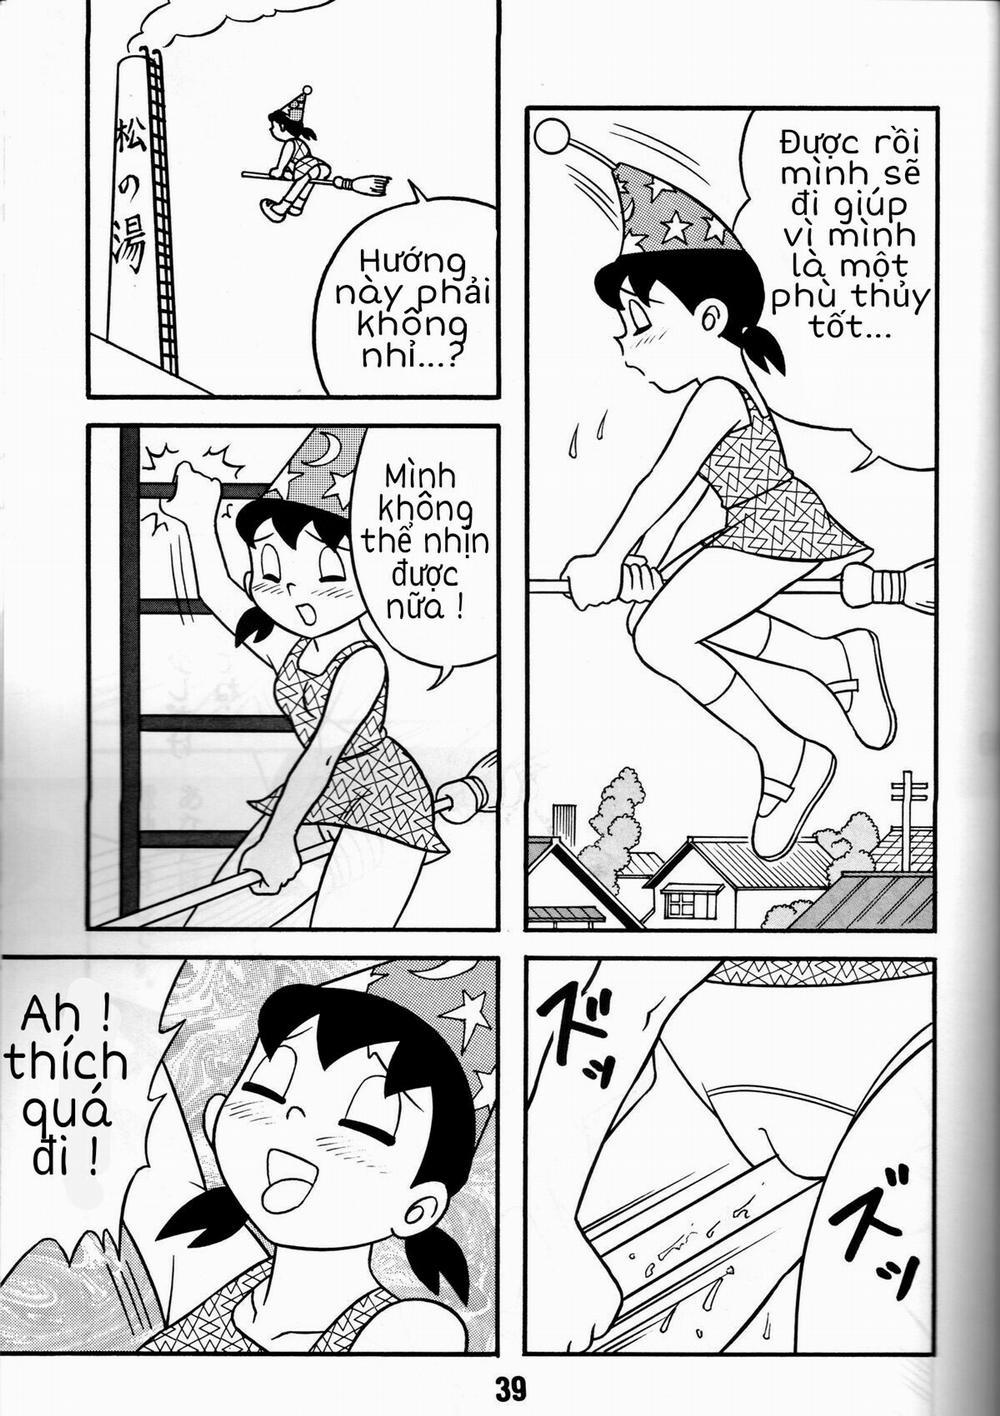 Tuyển Tập Doraemon Doujinshi 18+ Chương 4 Xuka c ph th y nh Trang 3